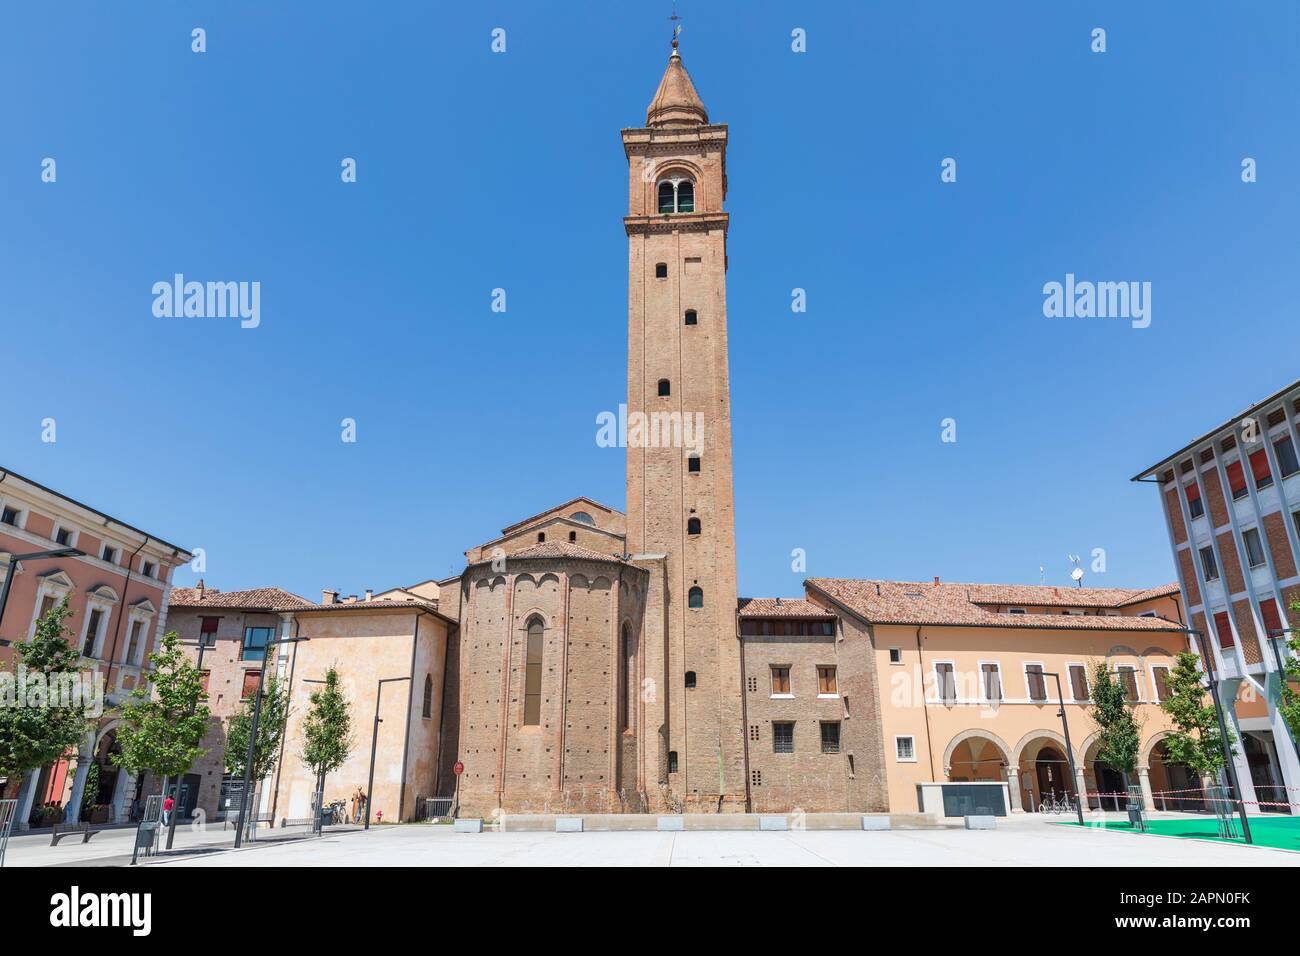 Cathédrale de San Giovanni Battista / Cesena Cattedrale di San Giovanni Battista, Cesena, Italie. Banque D'Images